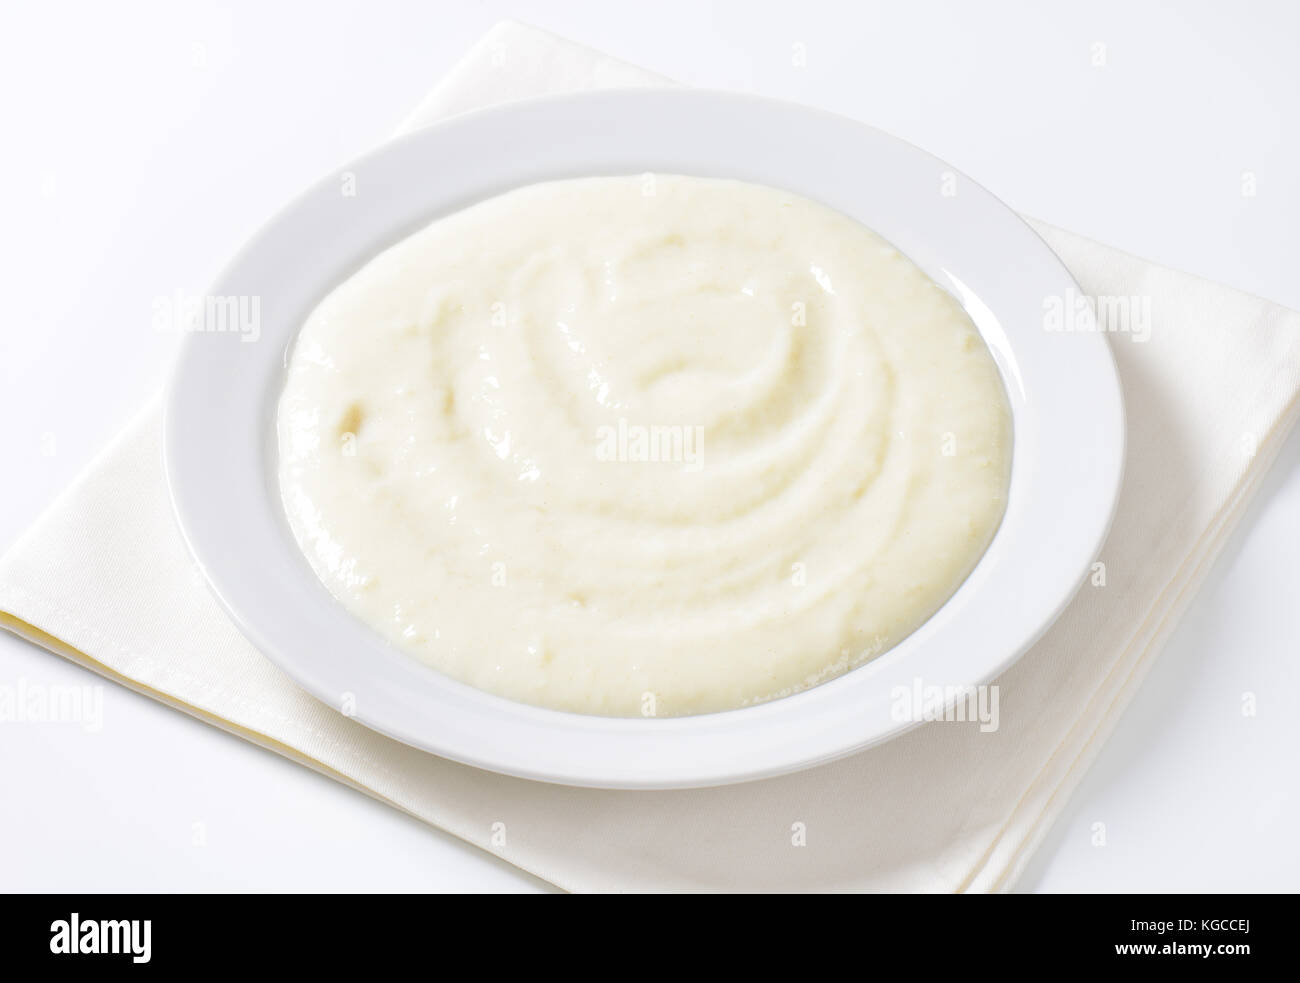 Teller Grießbrei auf weißen Serviette - Nahaufnahme Stockfoto